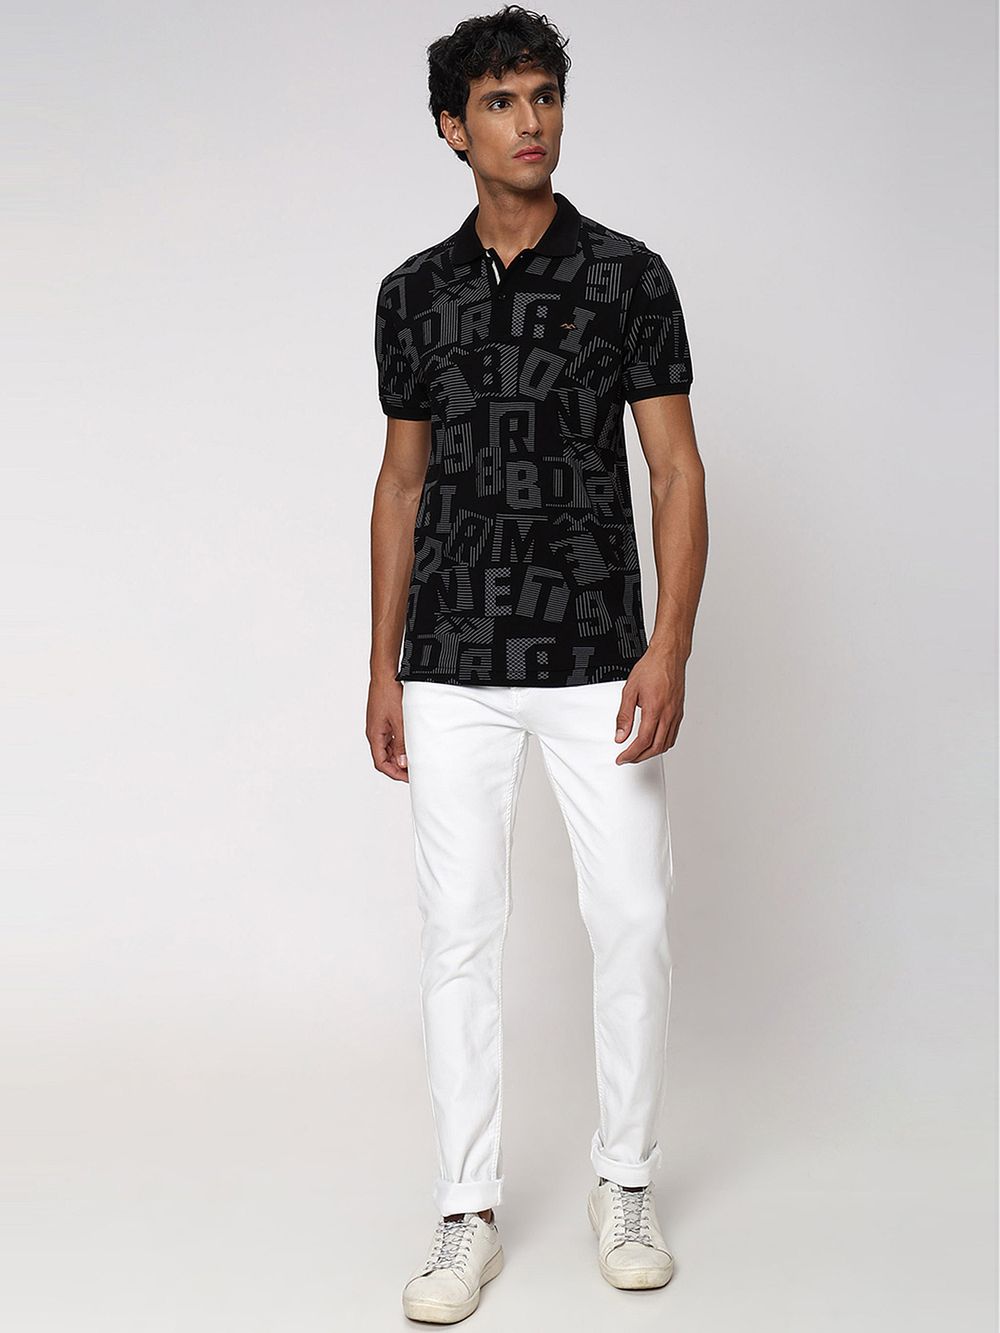 Black & Grey Abstract Print Pique Polo T-Shirt